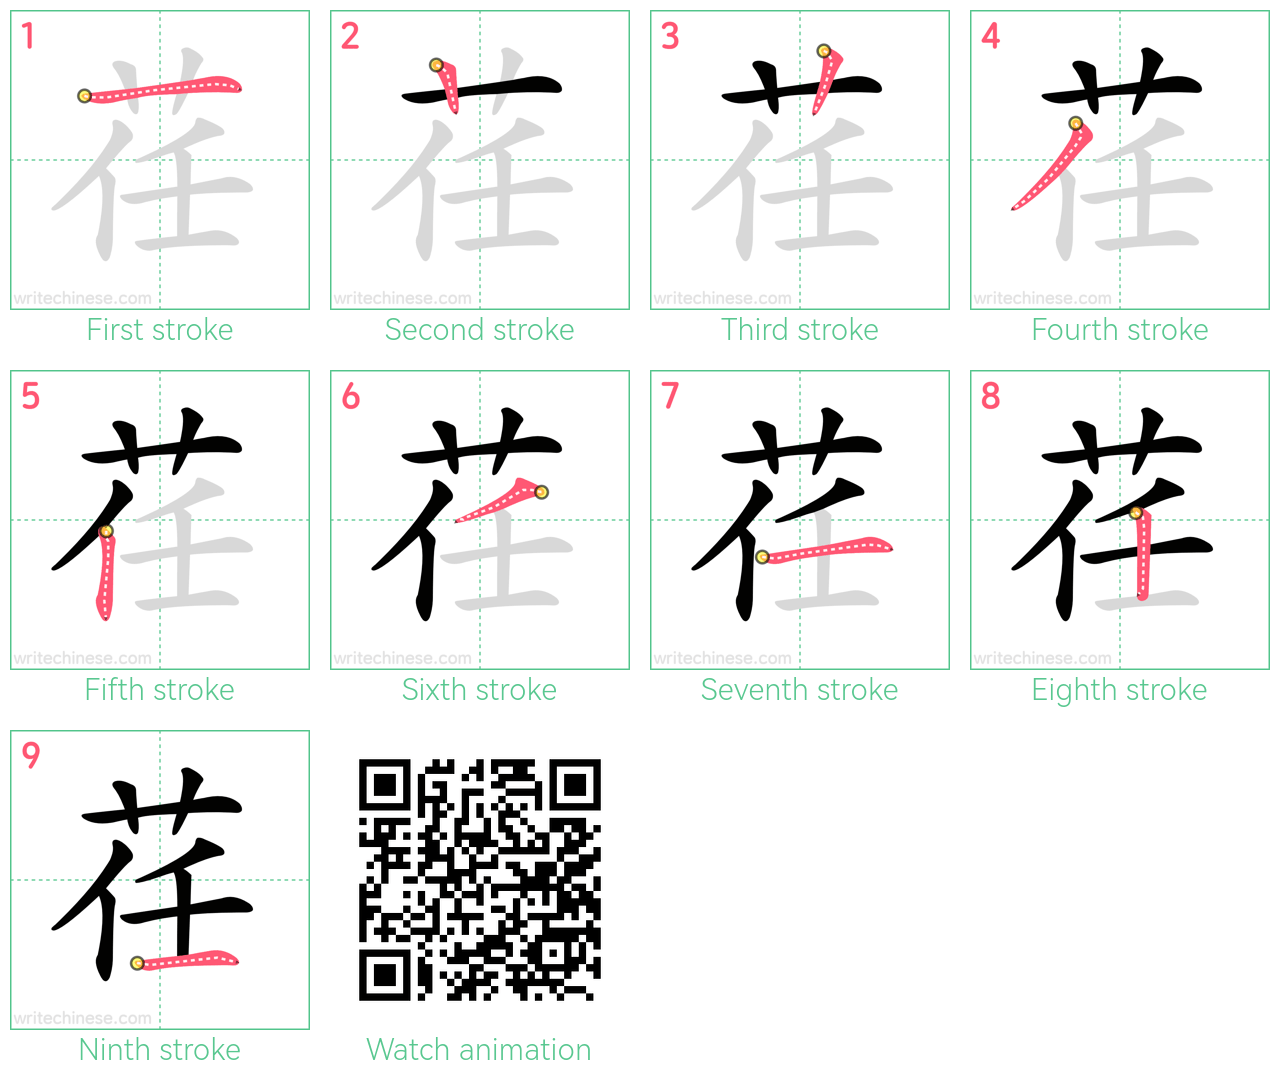 荏 step-by-step stroke order diagrams